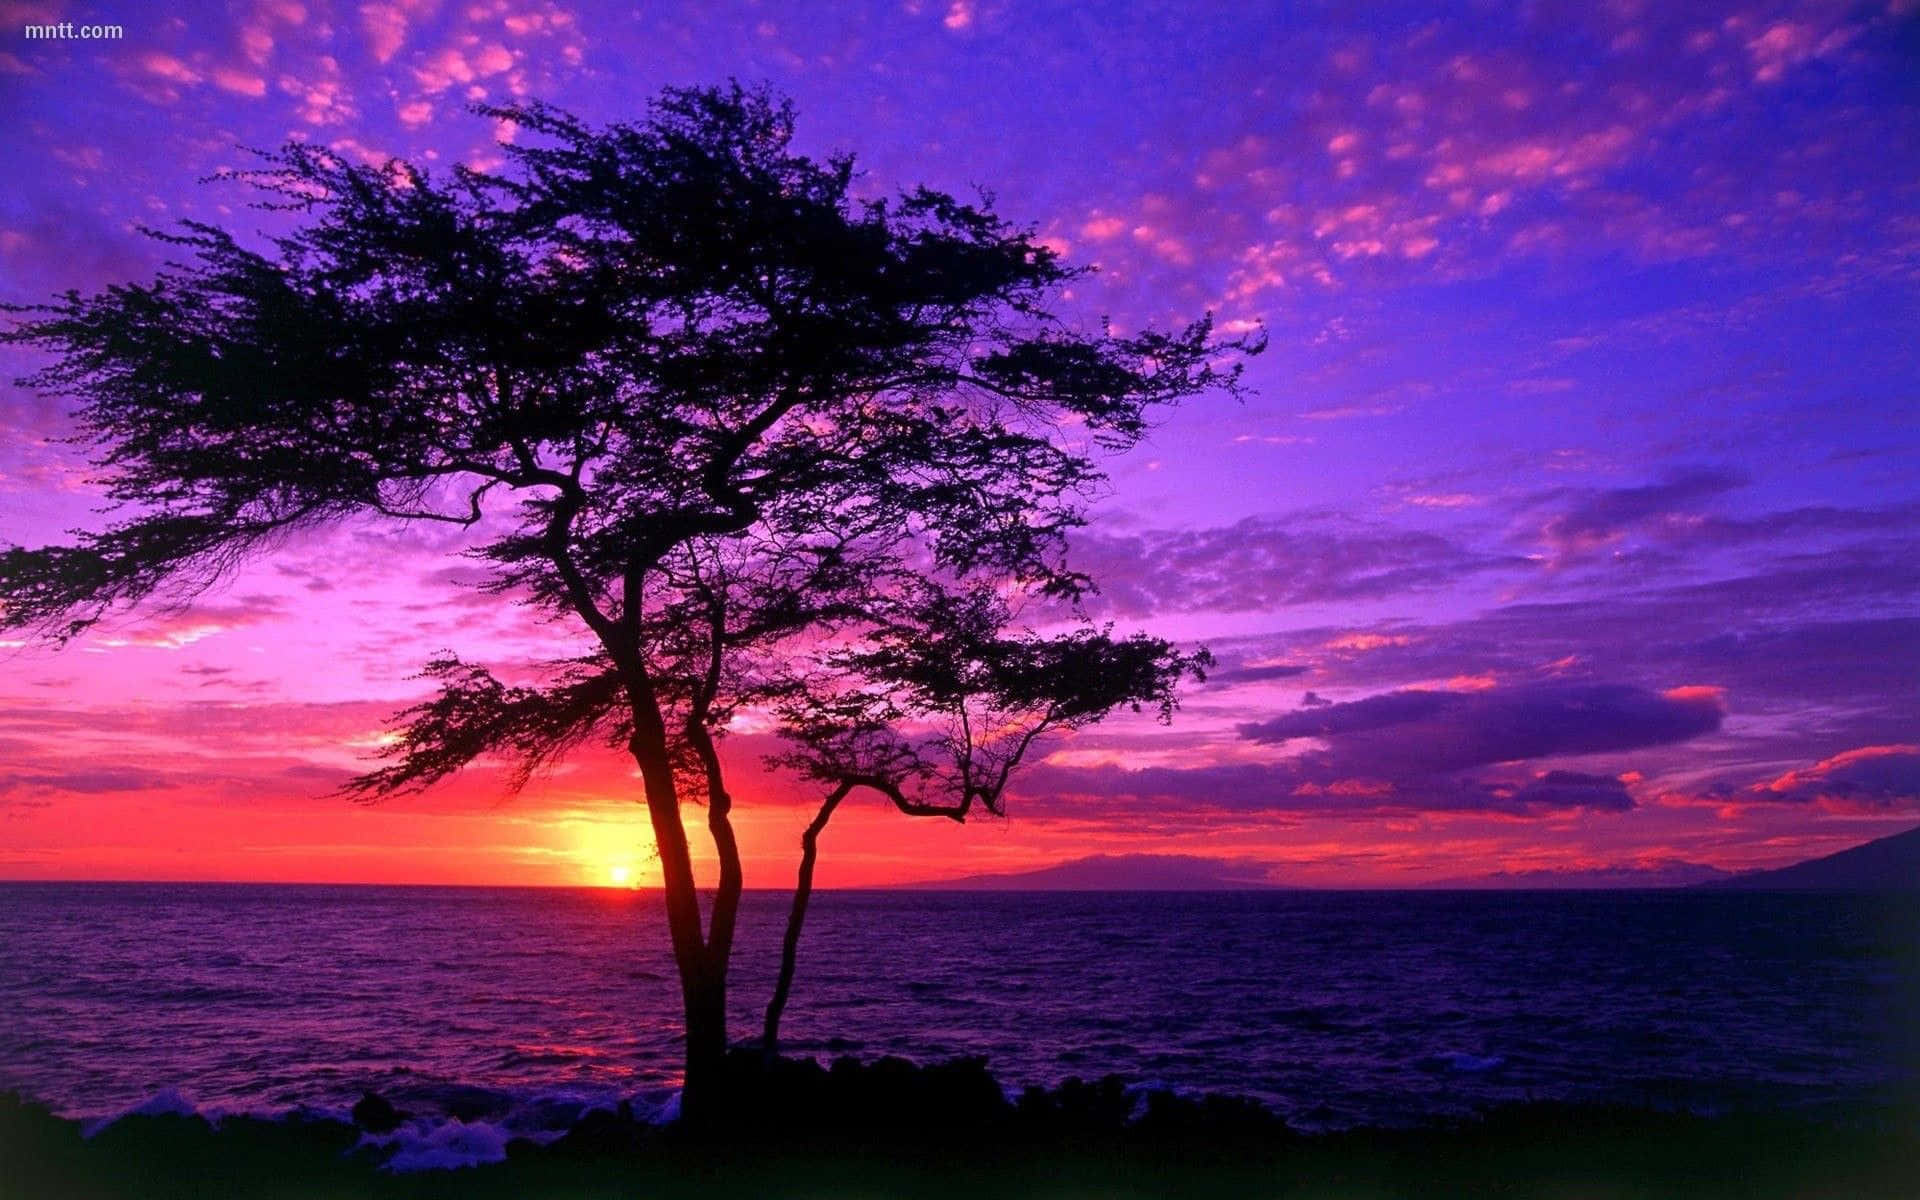 Malerischeshübsches Sonnenuntergangsbild